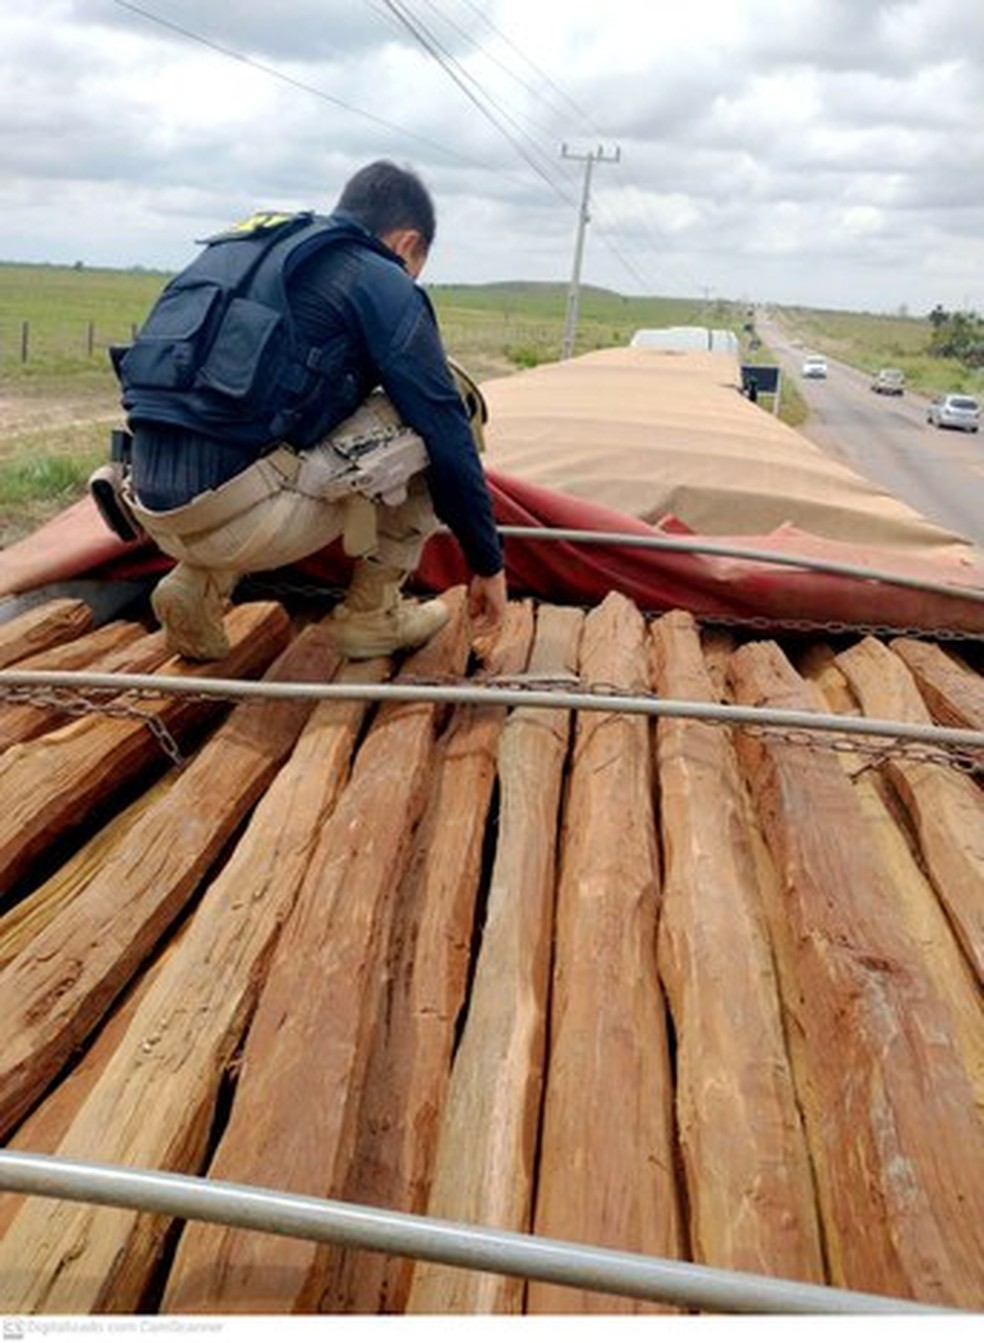 Carga com madeira transportada sem nota foi apreendida em Marabá  — Foto: PRF/Reprodução 